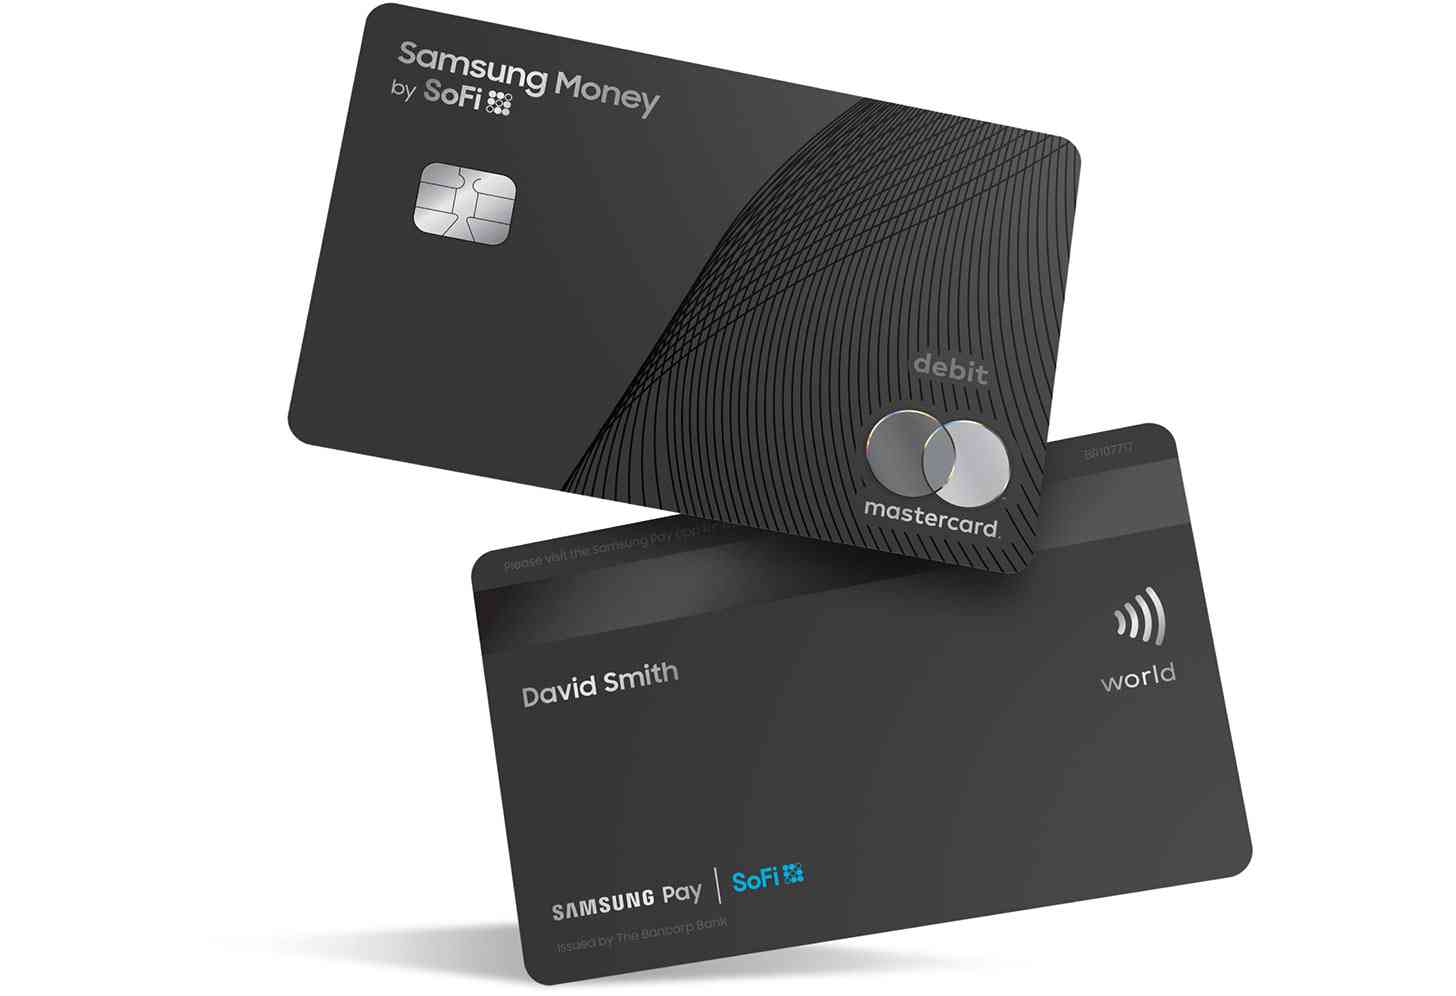 Samsung Money debit card